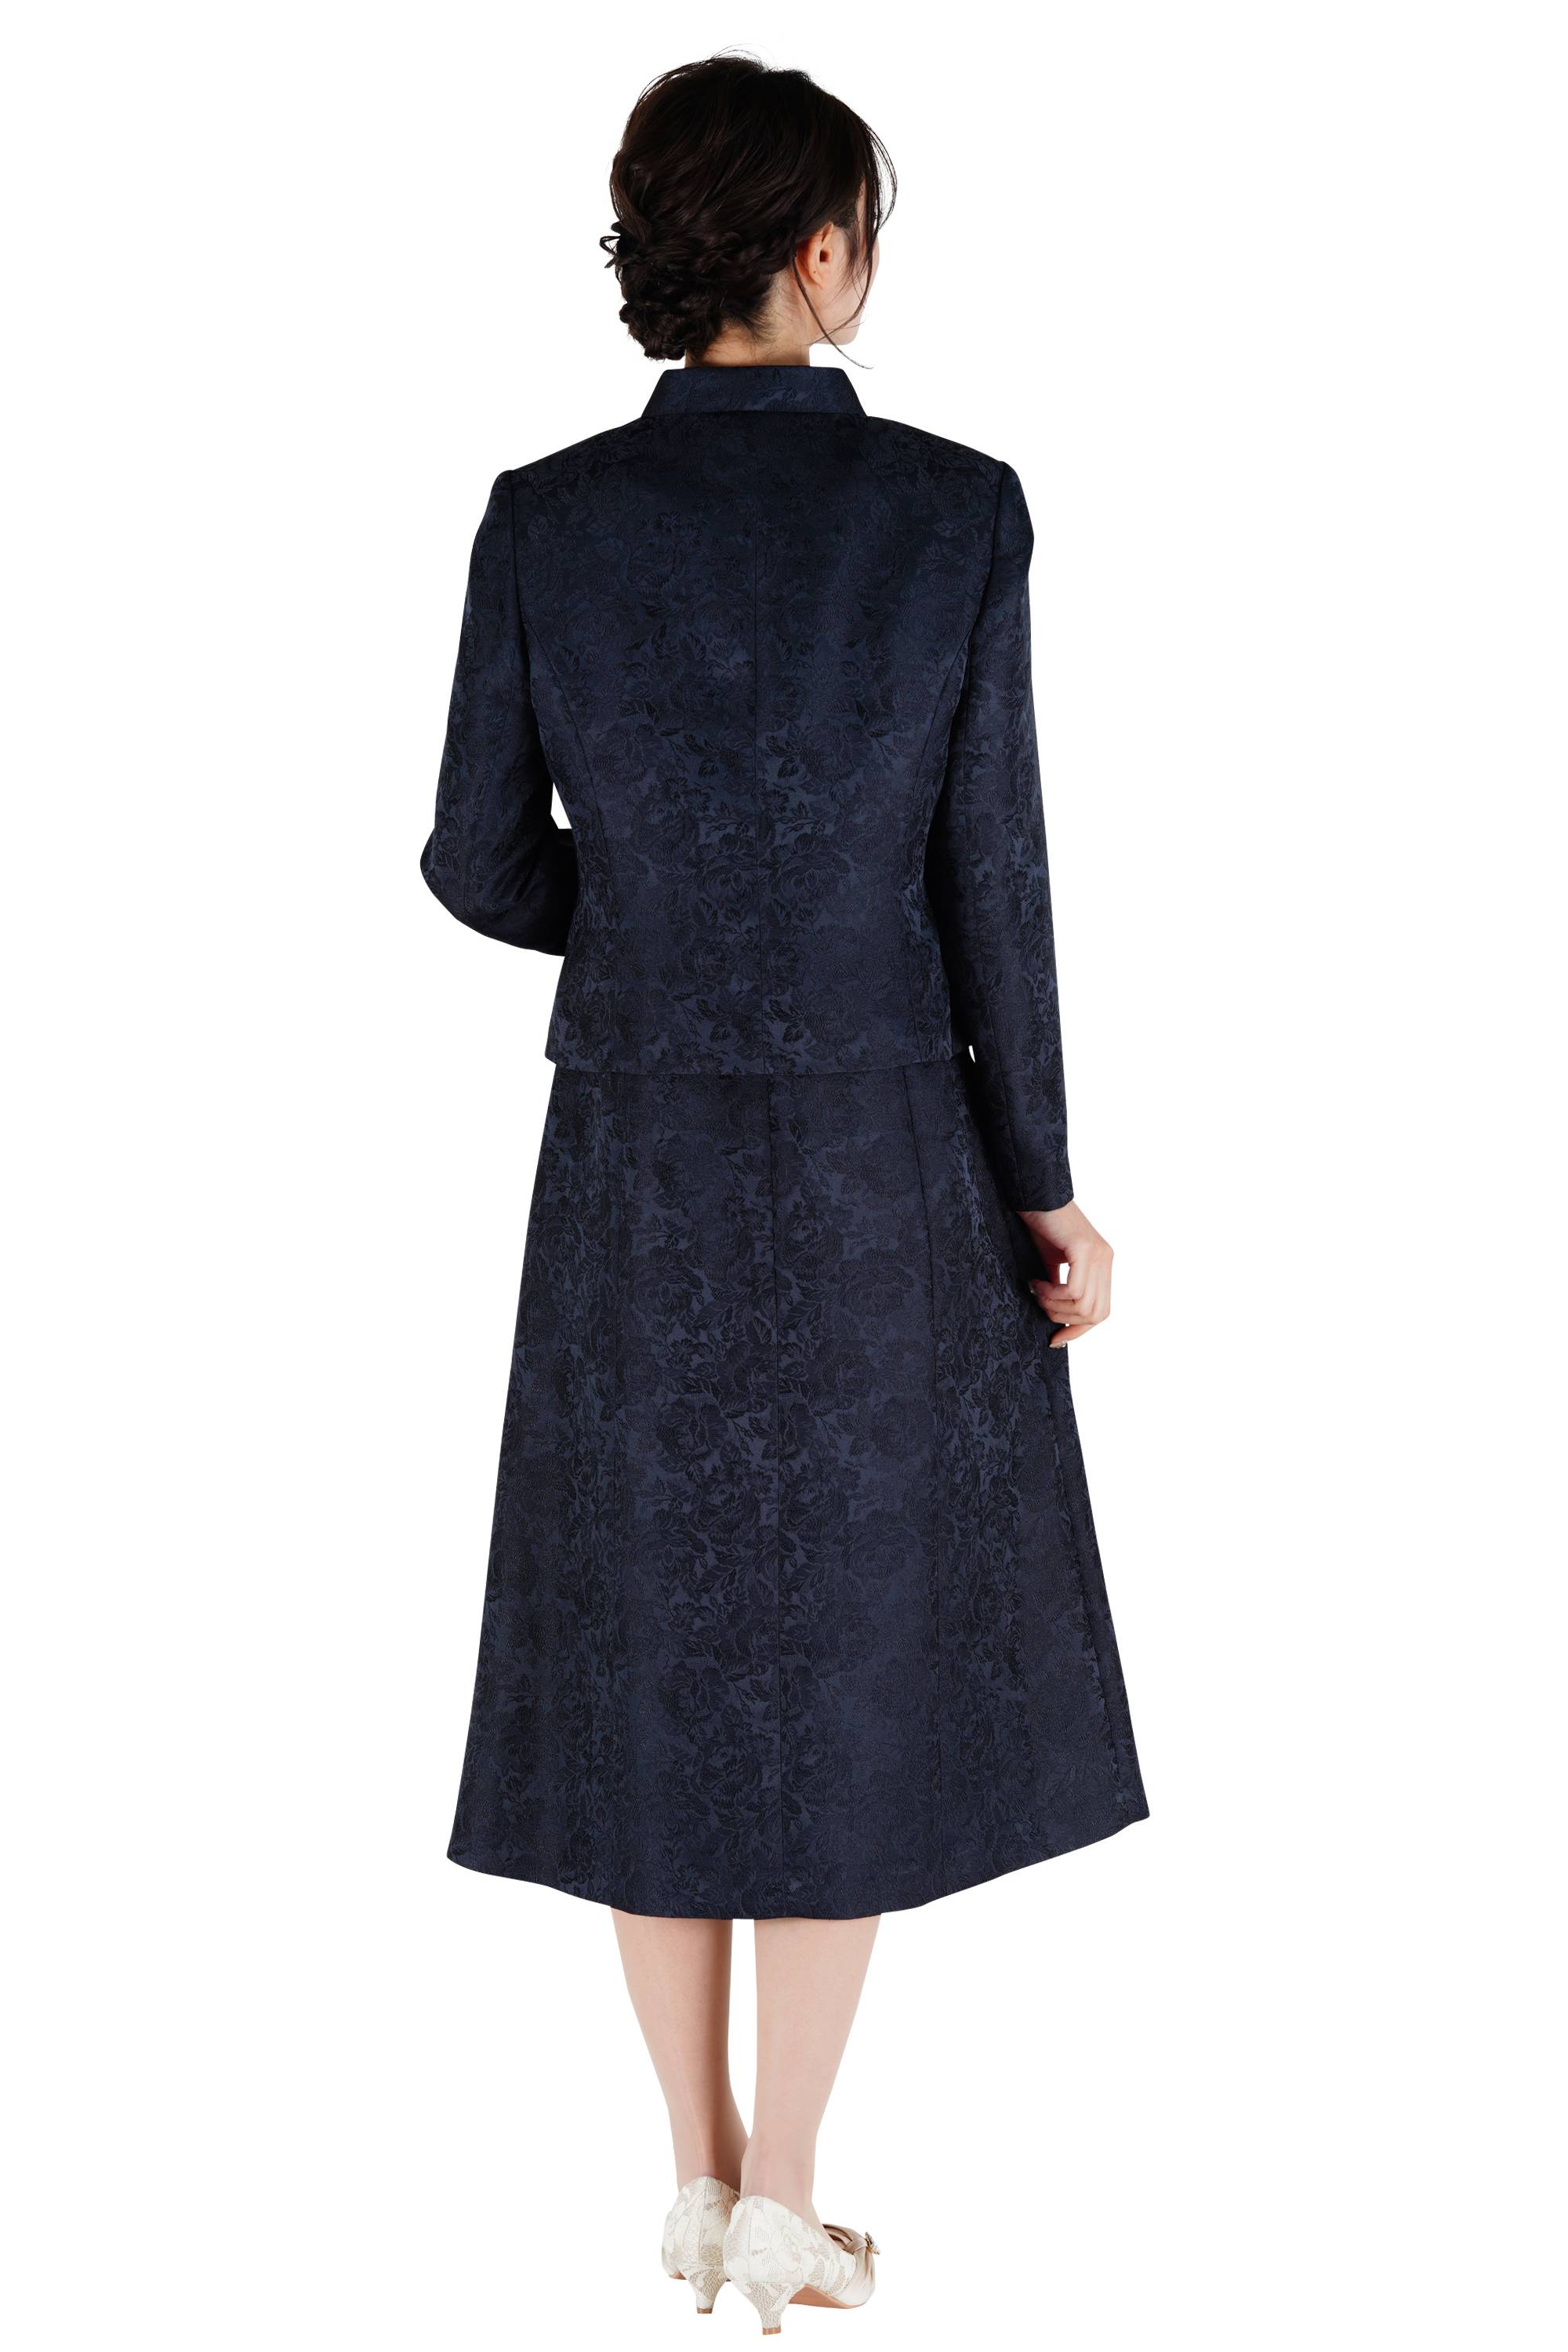 MAMERE ジャガード織ドレス140cm価格55000円 - ワンピース